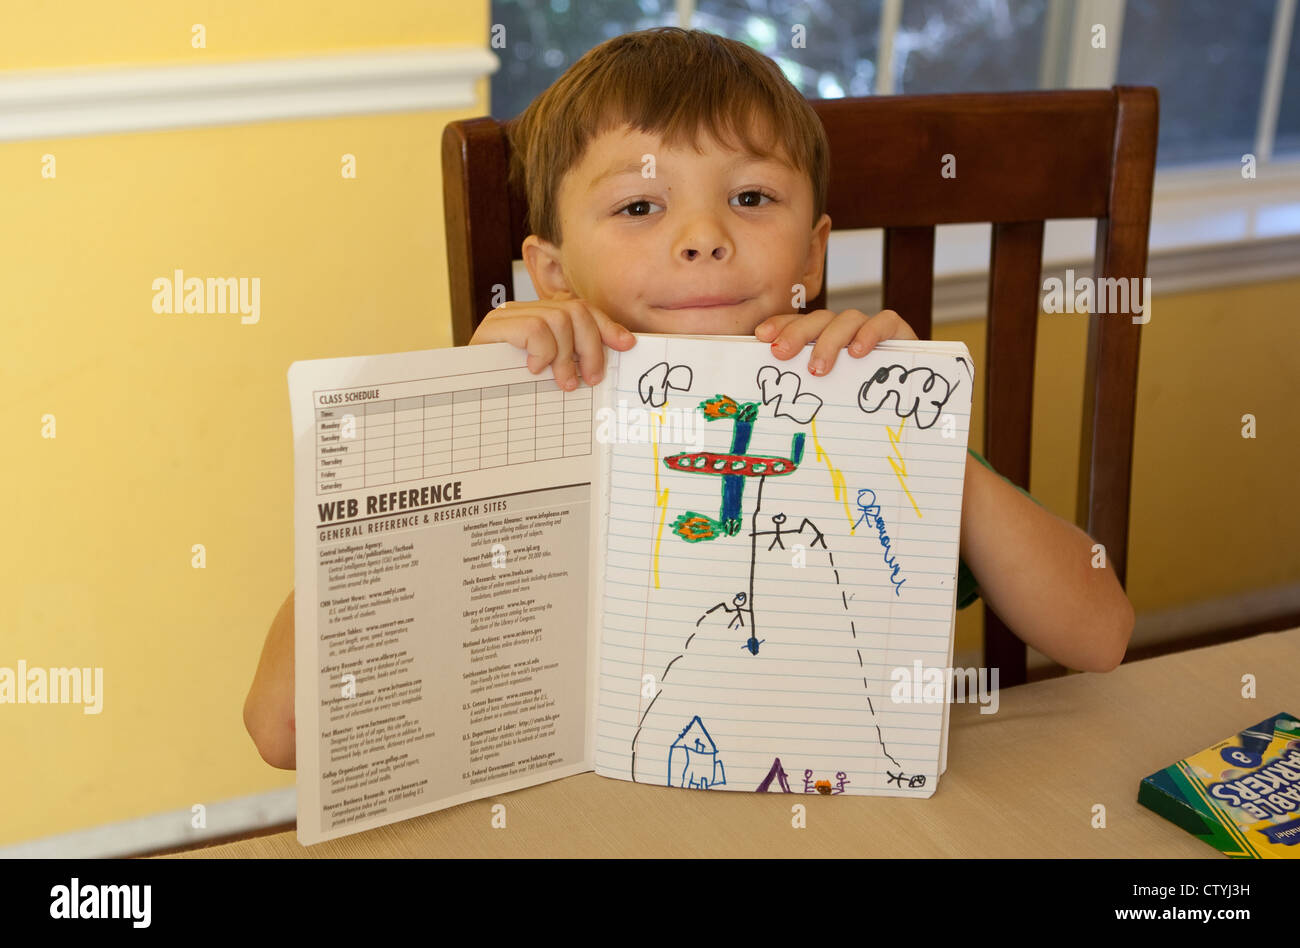 7 Jahre alten mexikanisch-amerikanischen jungen zeigt Zeichnung im Notebook während zu Hause während der Sommerferien Stockfoto